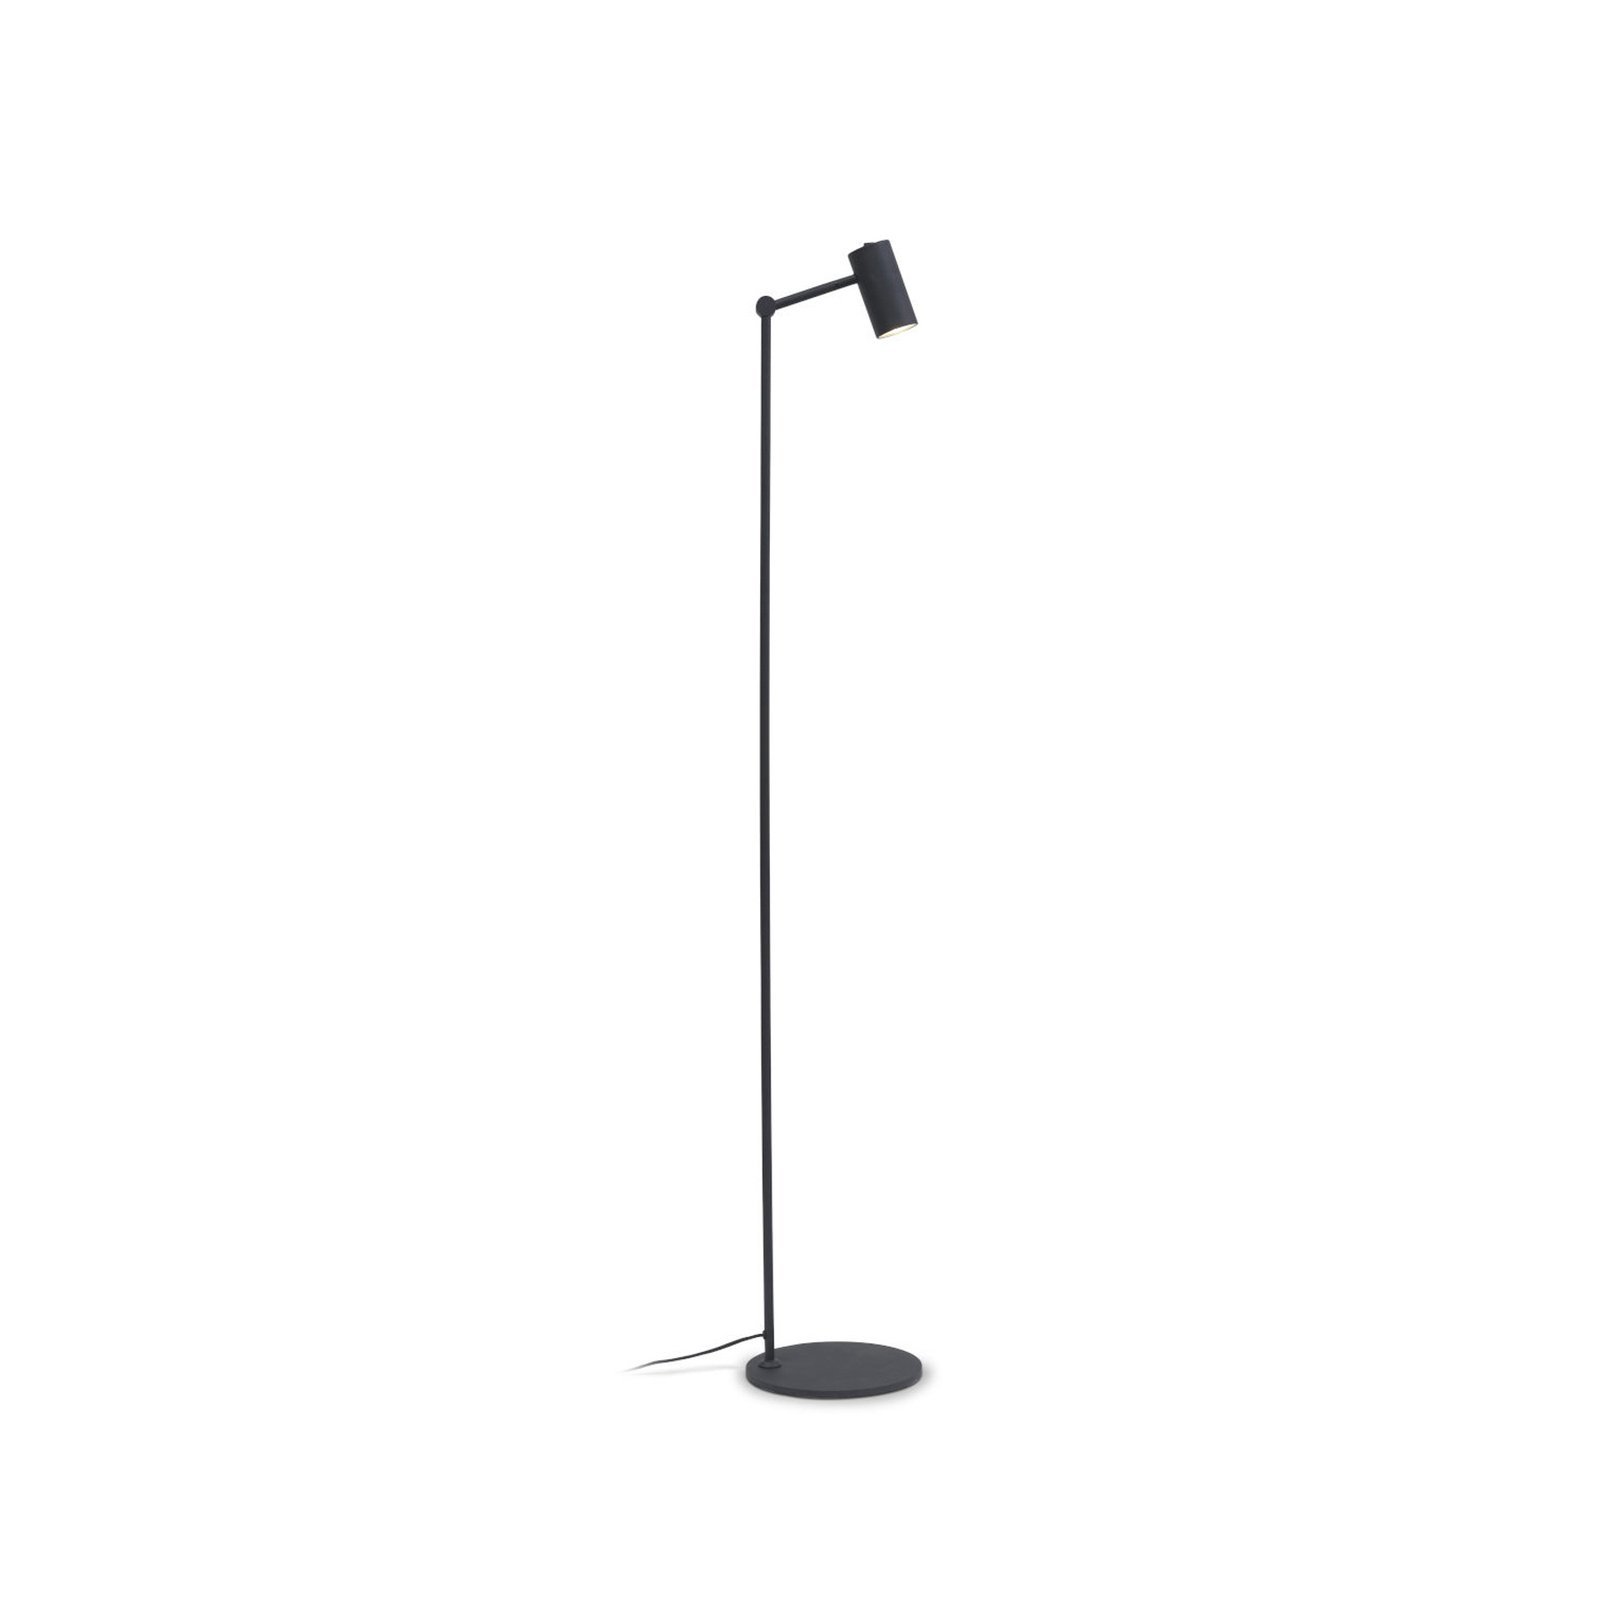 It’s about RoMi Montreux floor lamp, black